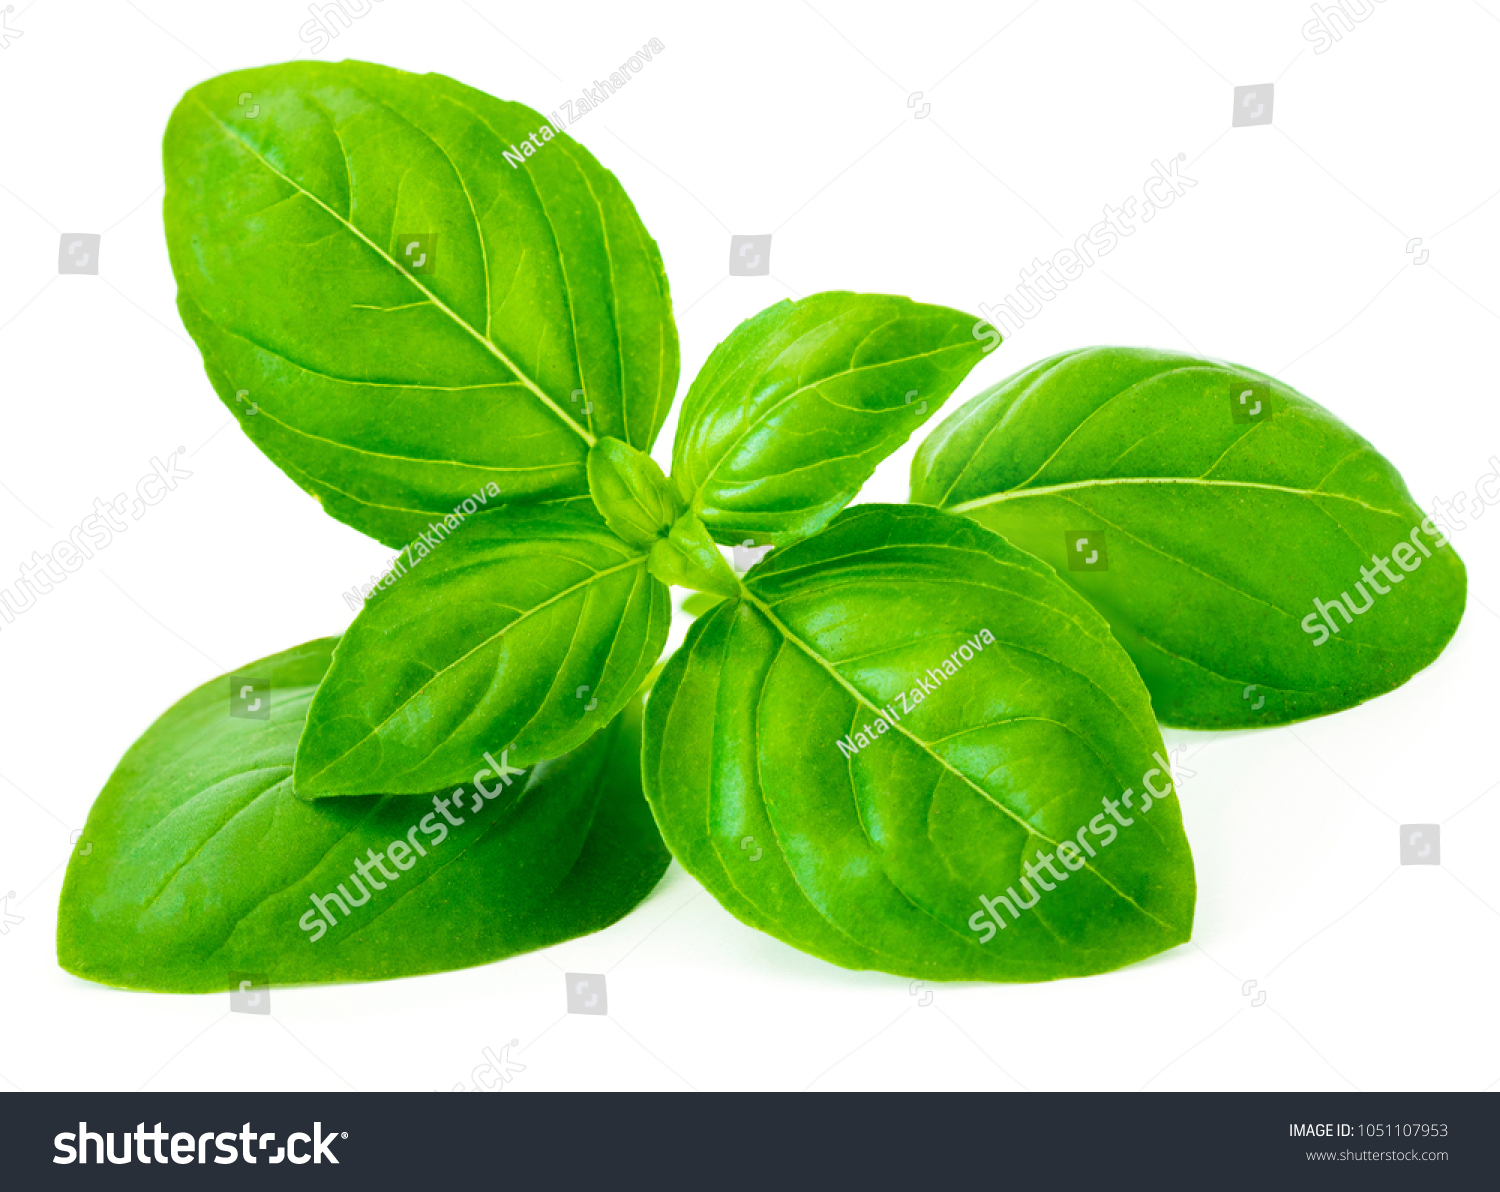 Fresh basil leaf isolated on white background, close up. Basil herb
 #1051107953